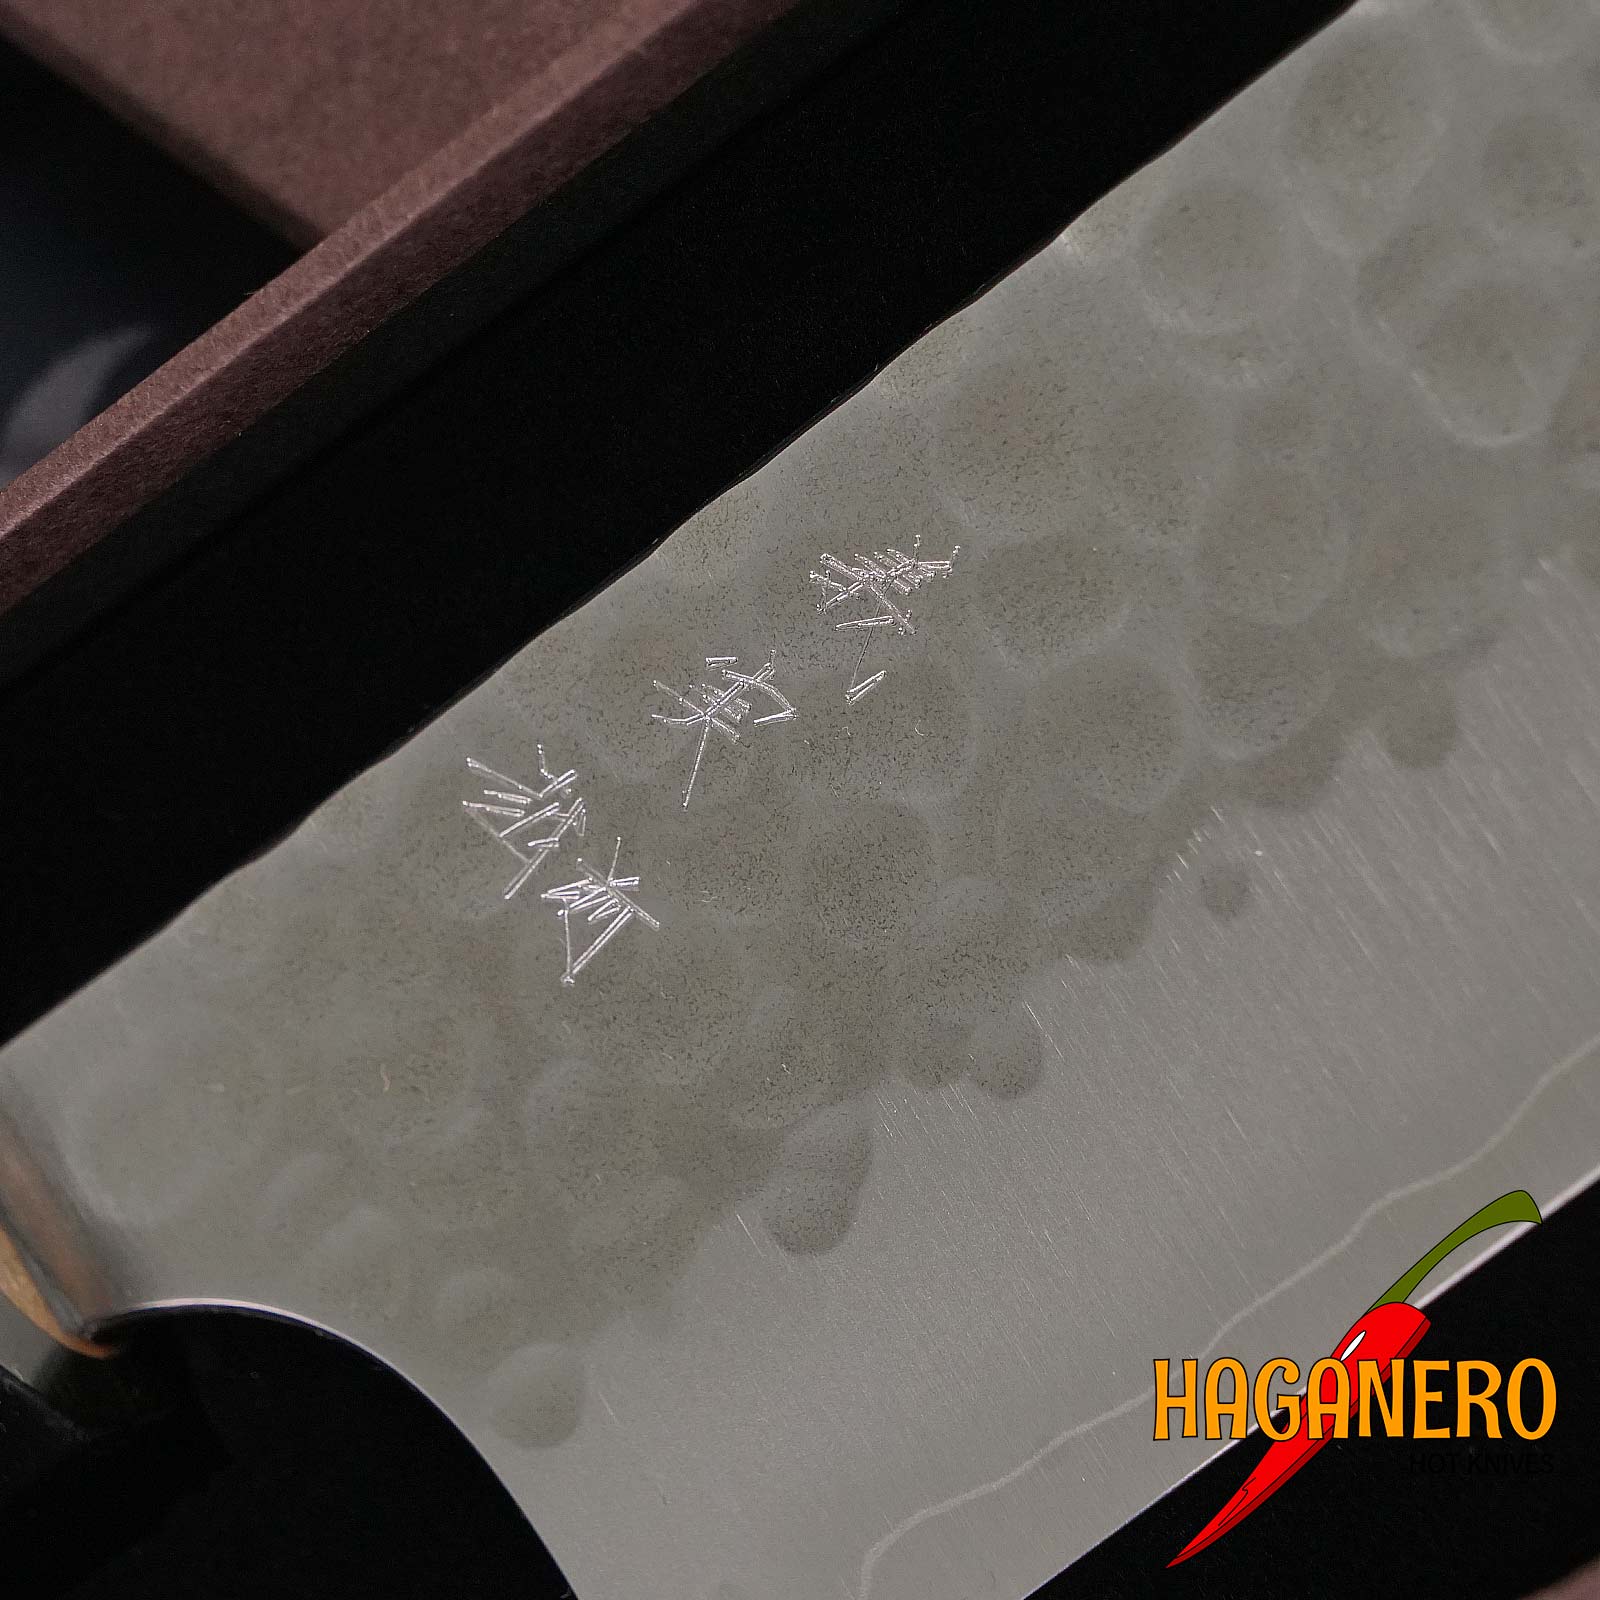 Gyuto Japanisches Küchenmesser Yoshimi Kato Hammered poliert SG2 D-1505 21cm